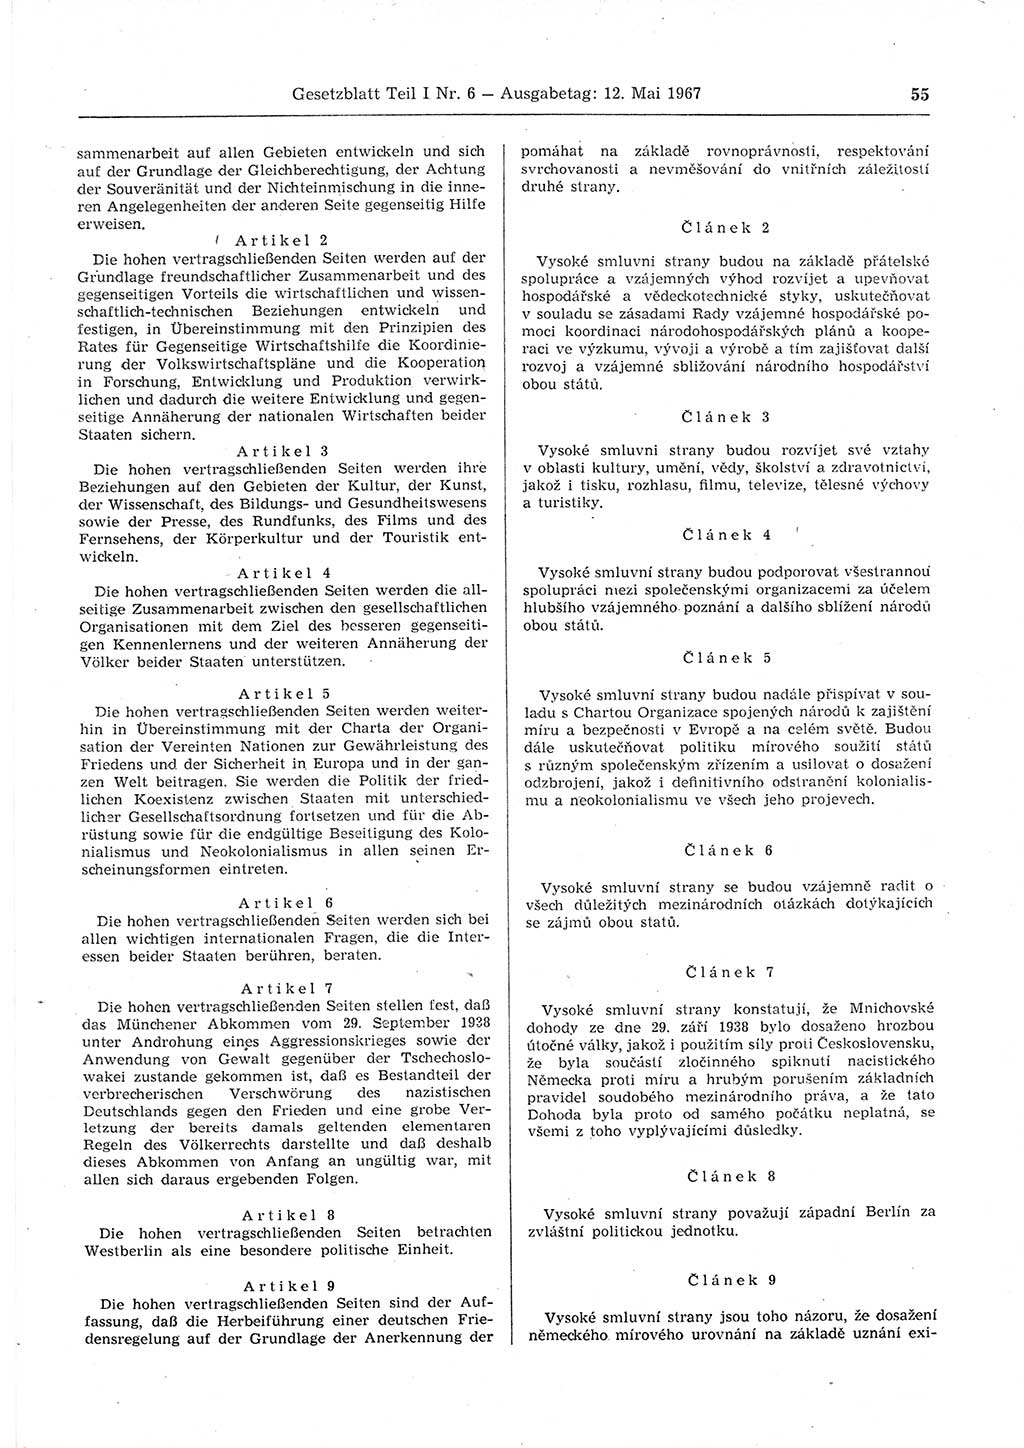 Gesetzblatt (GBl.) der Deutschen Demokratischen Republik (DDR) Teil Ⅰ 1967, Seite 55 (GBl. DDR Ⅰ 1967, S. 55)